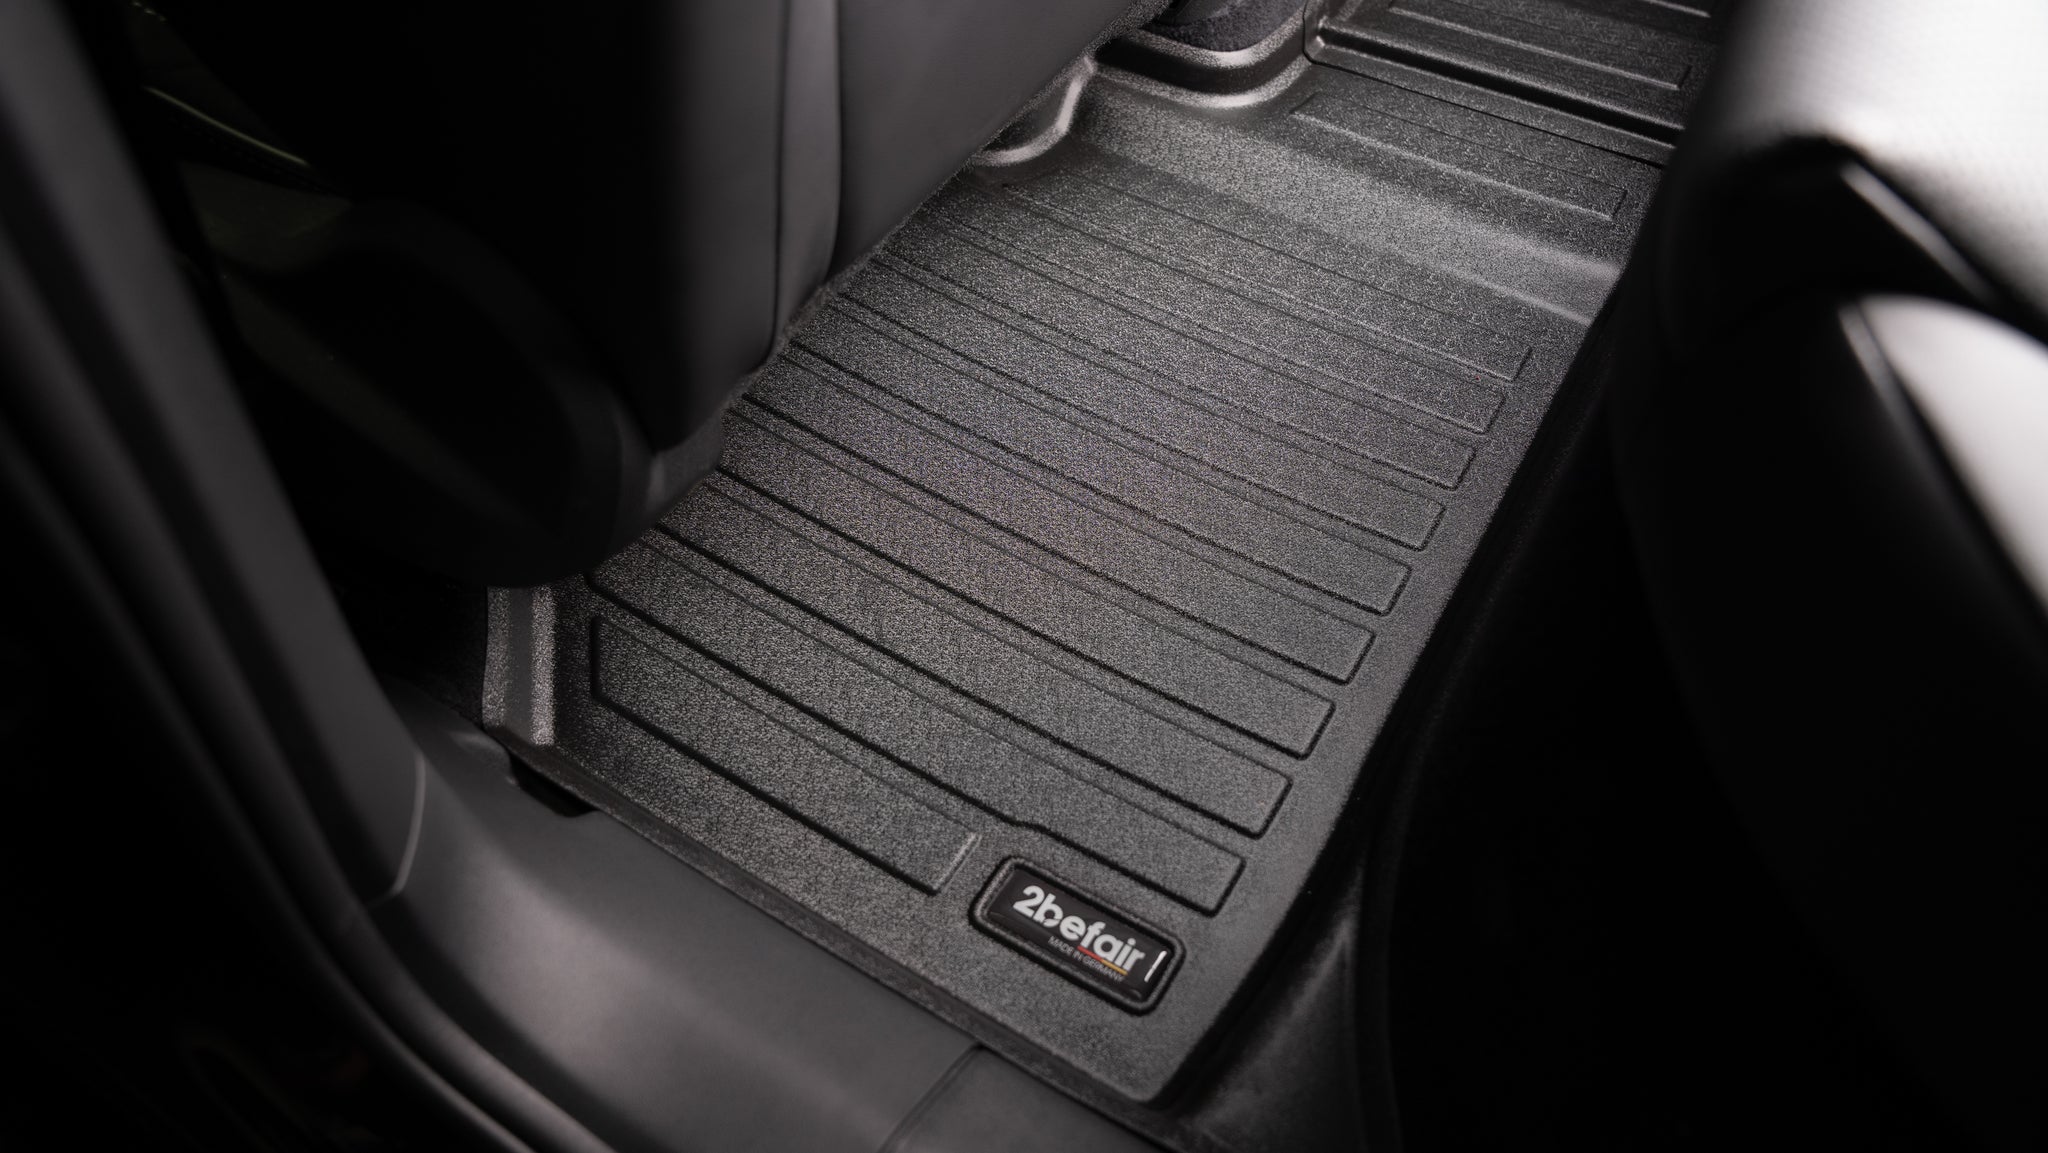 2befair rubberen matten voor de voetenruimte achter voor de VW ID.3